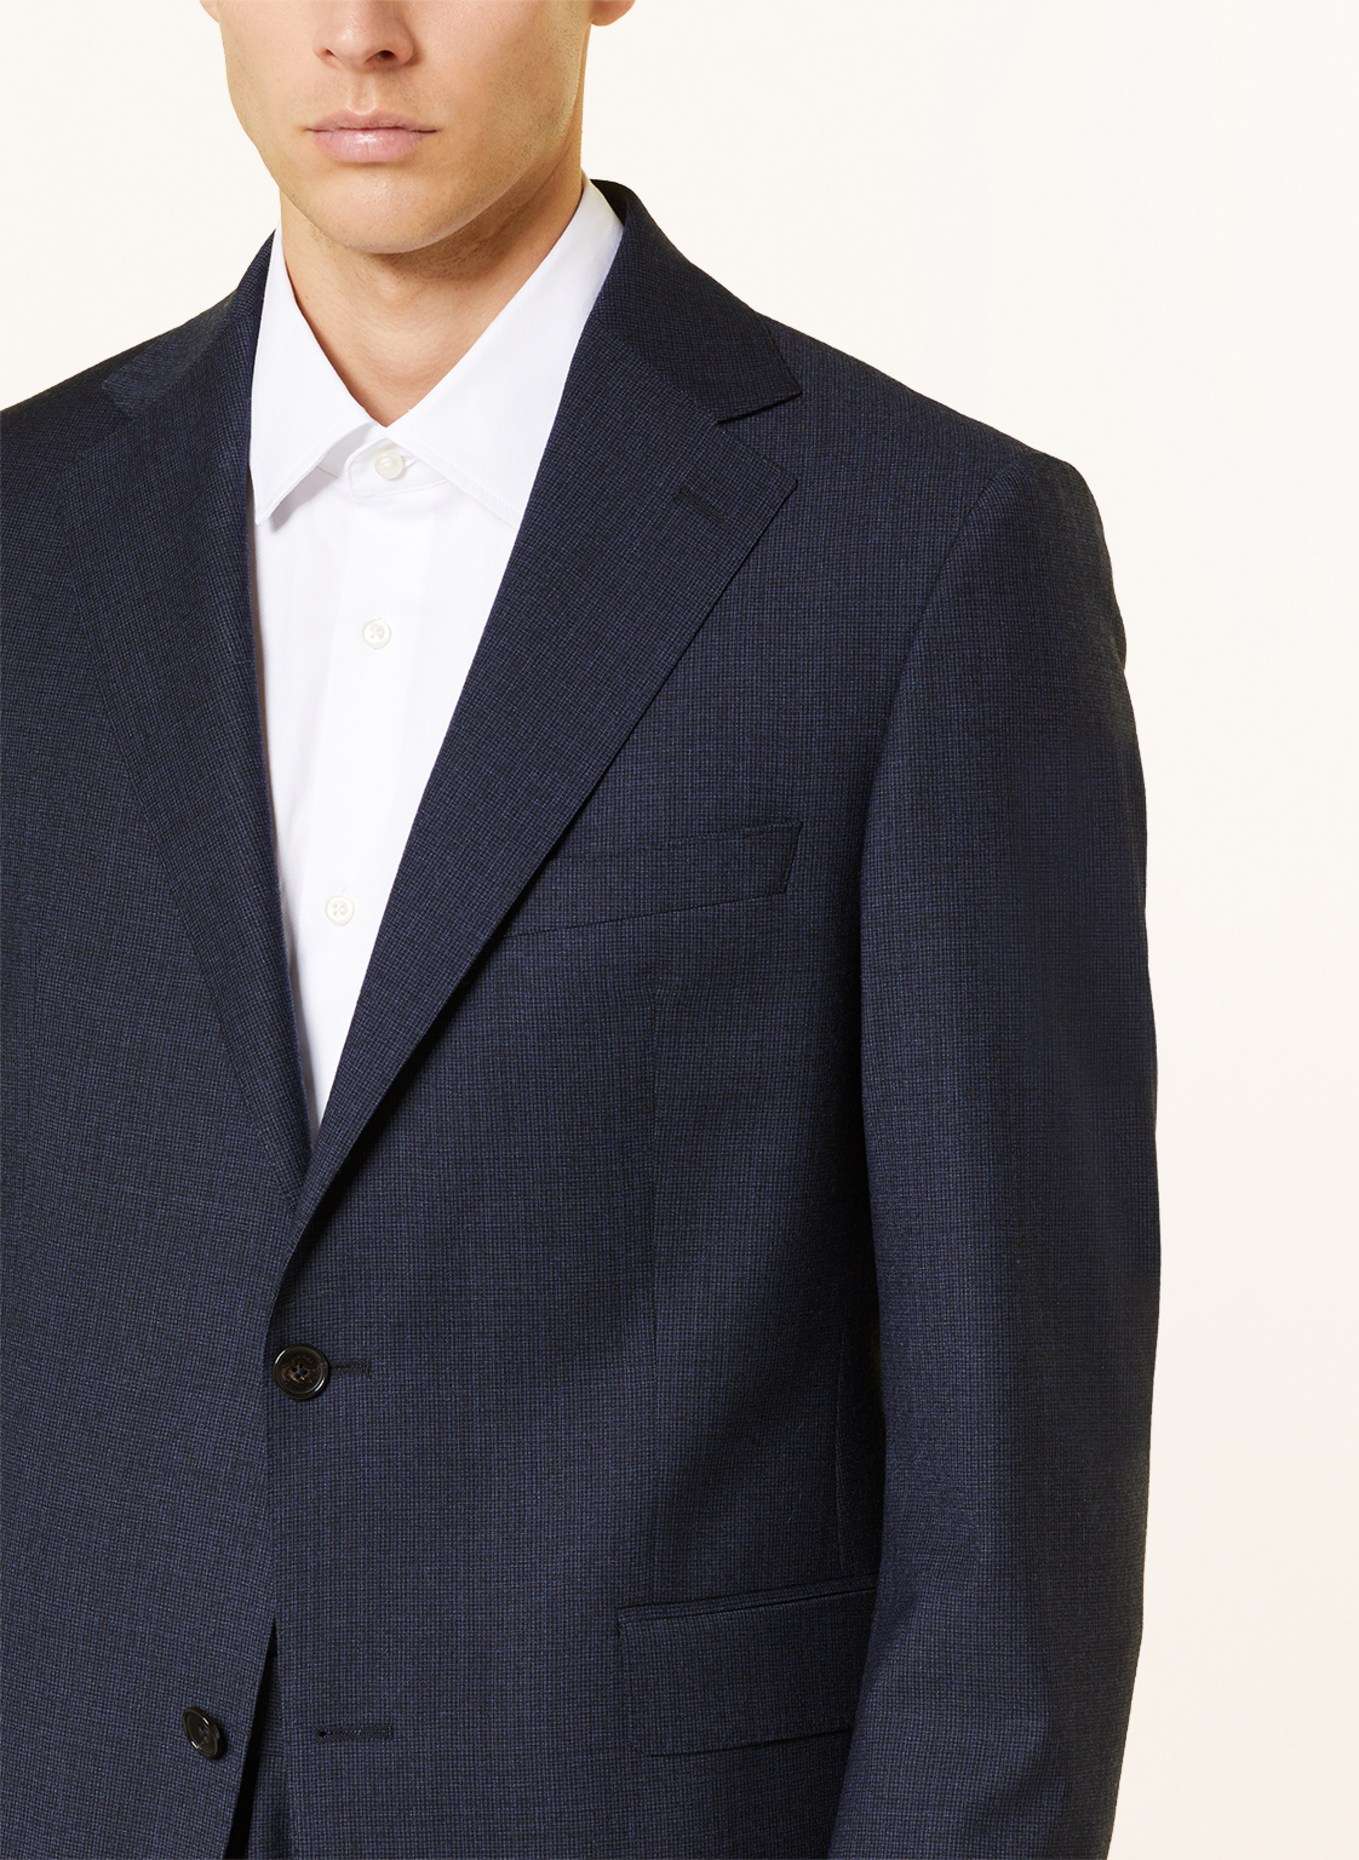 EDUARD DRESSLER Suit jacket comfort fit, Color: 047 DUNKELBLAU (Image 5)